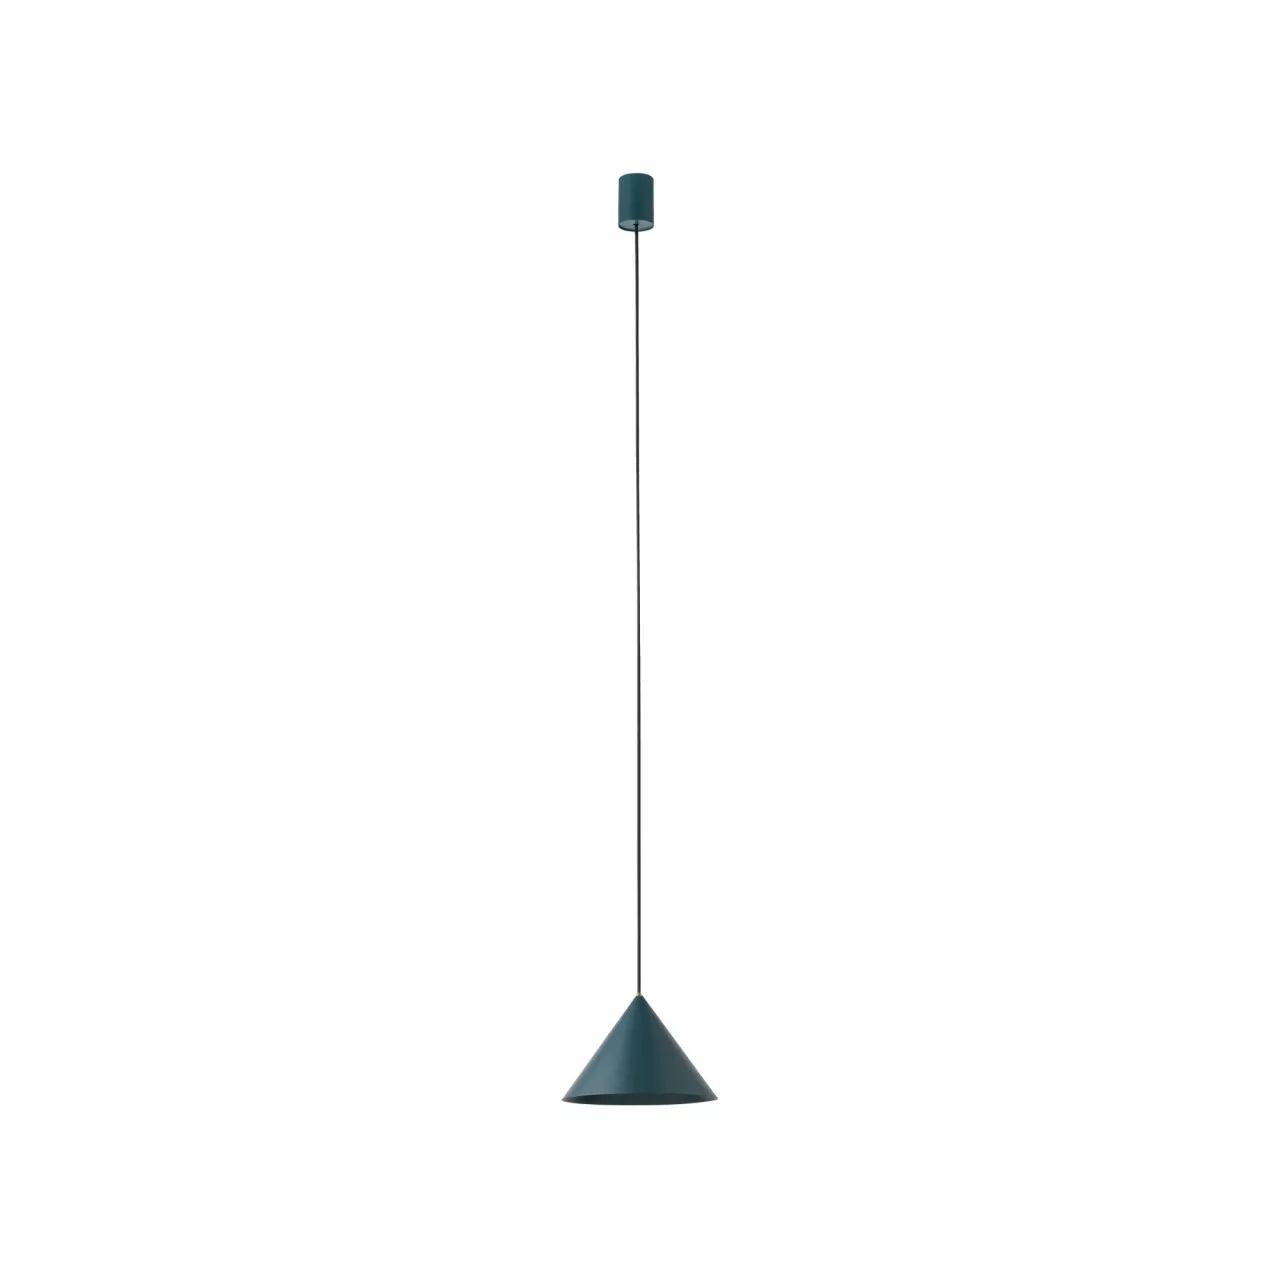 Pendelleuchte Blaugrün Metall Kegelförmig ⌀ 20,5cm Zenith günstig online kaufen